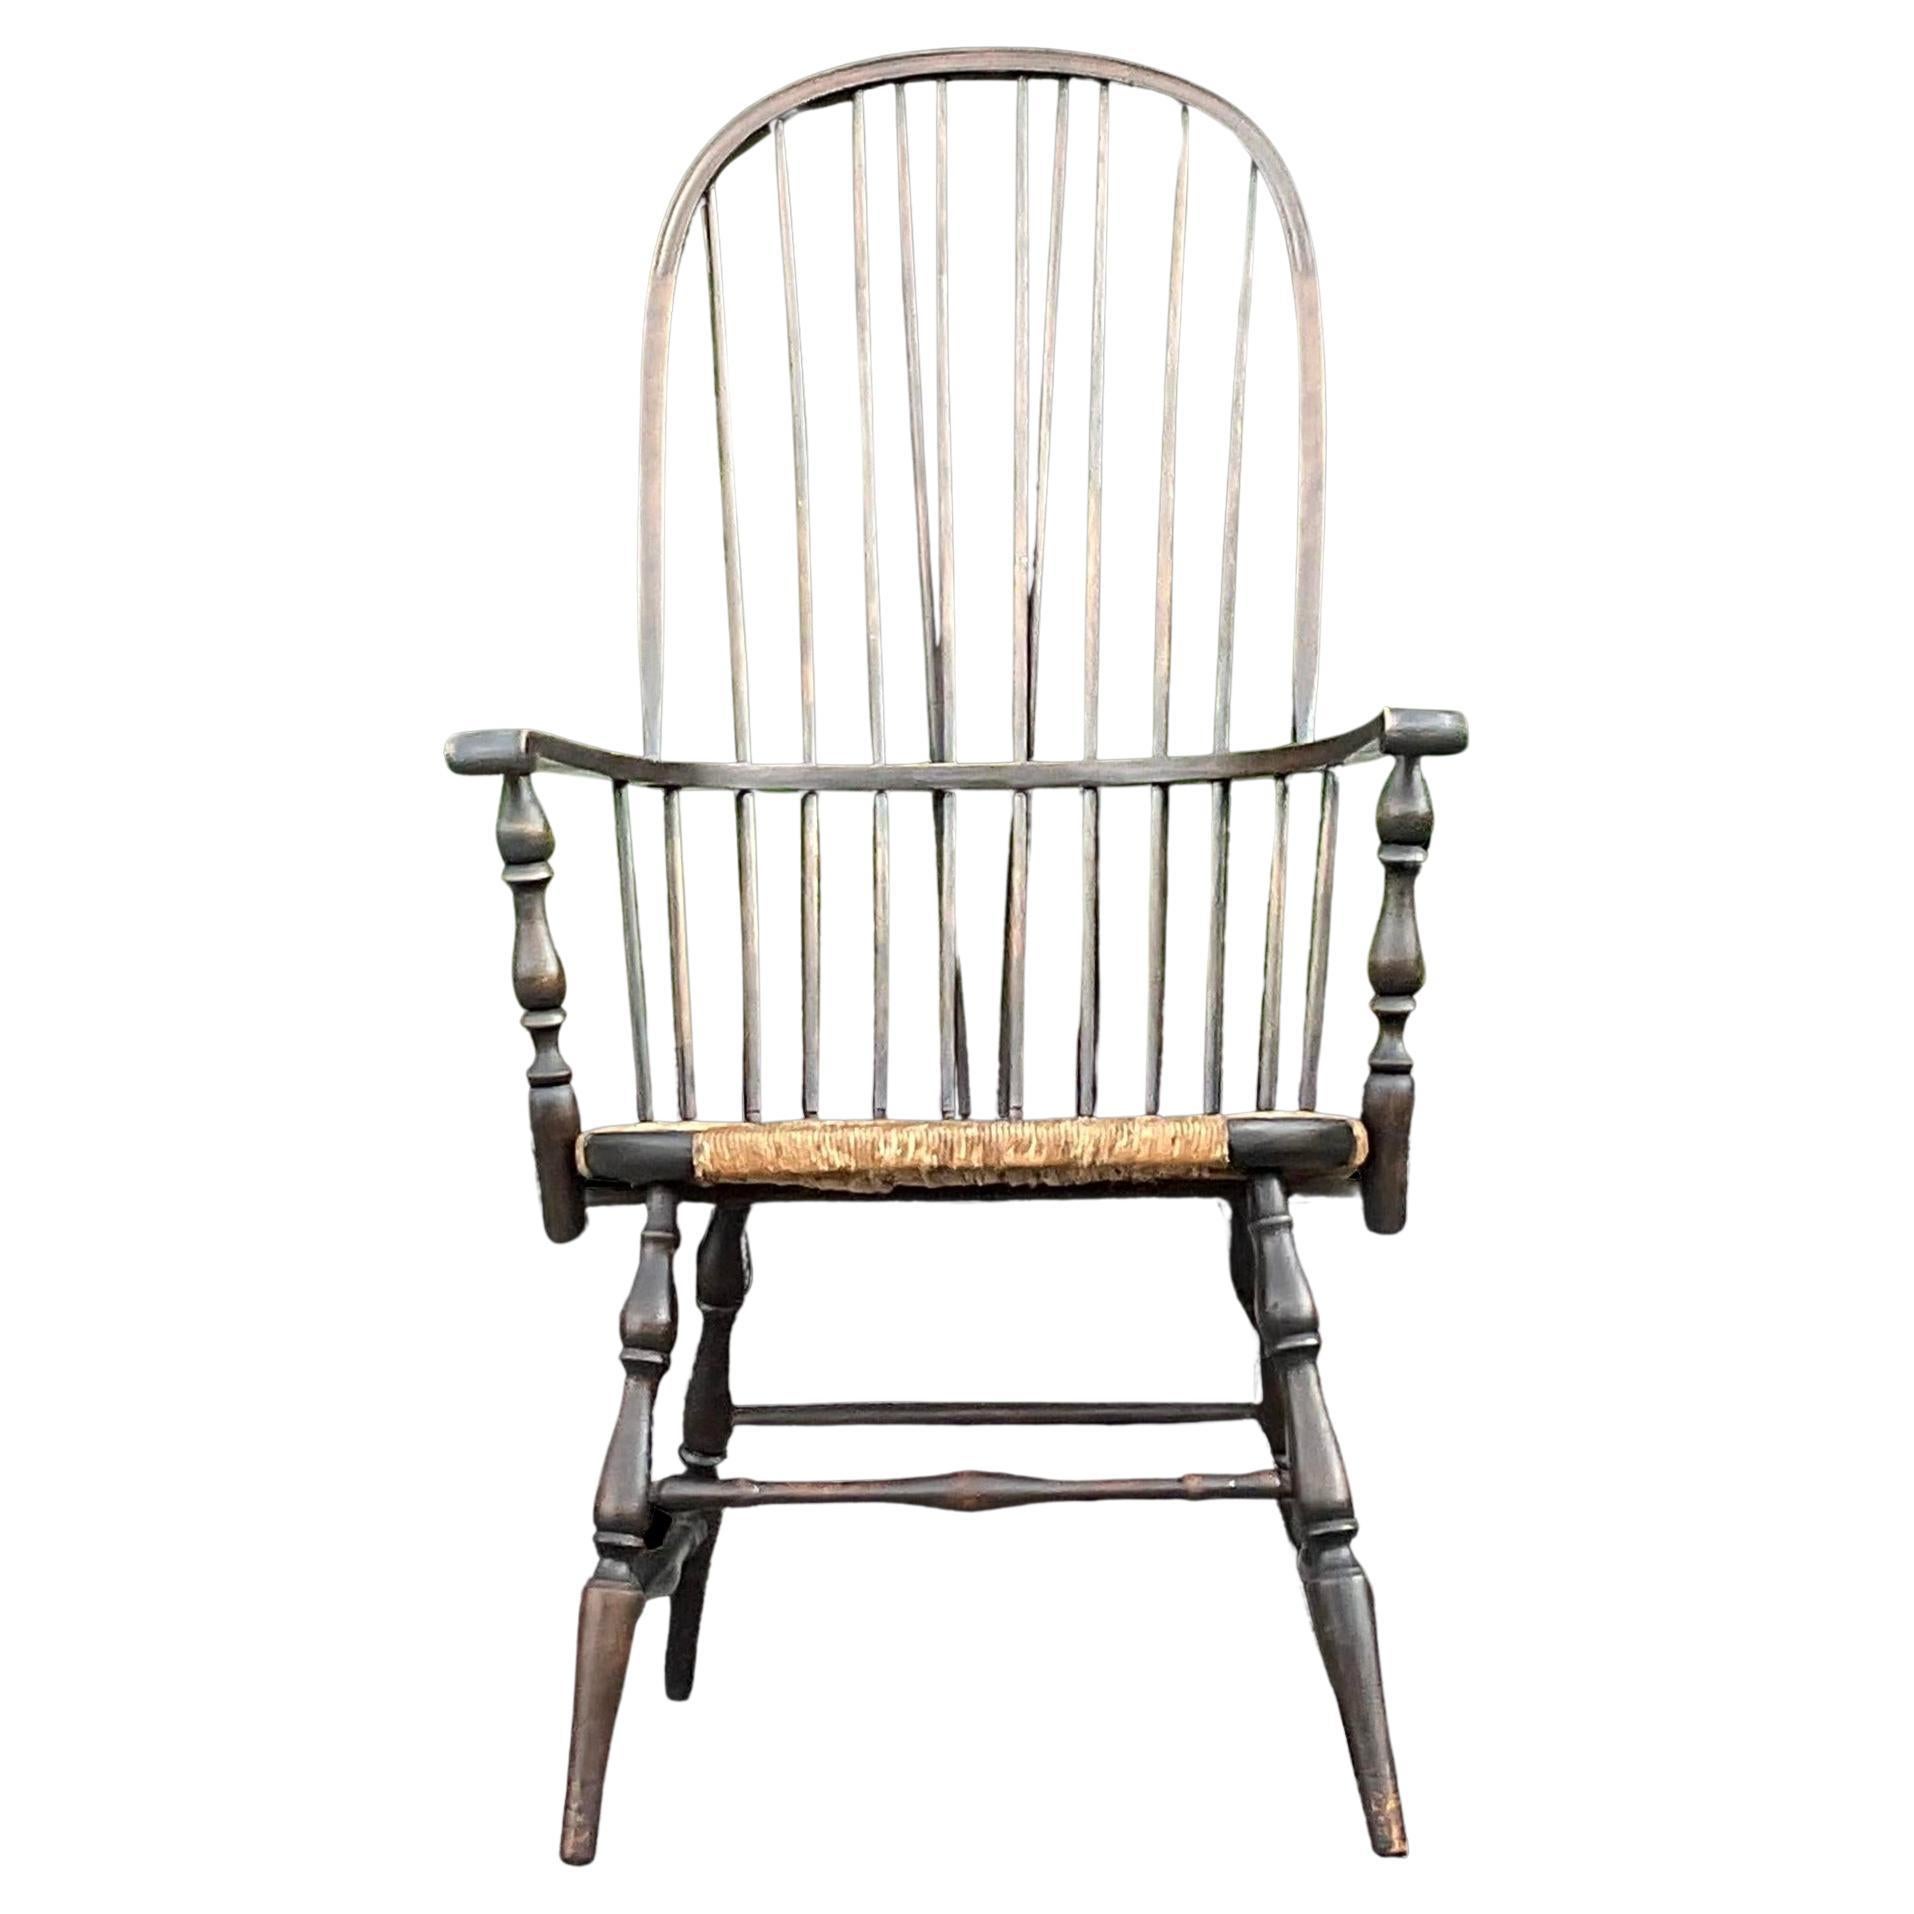 Vintage Traditional Windsor Hoop Back Chair For Sale